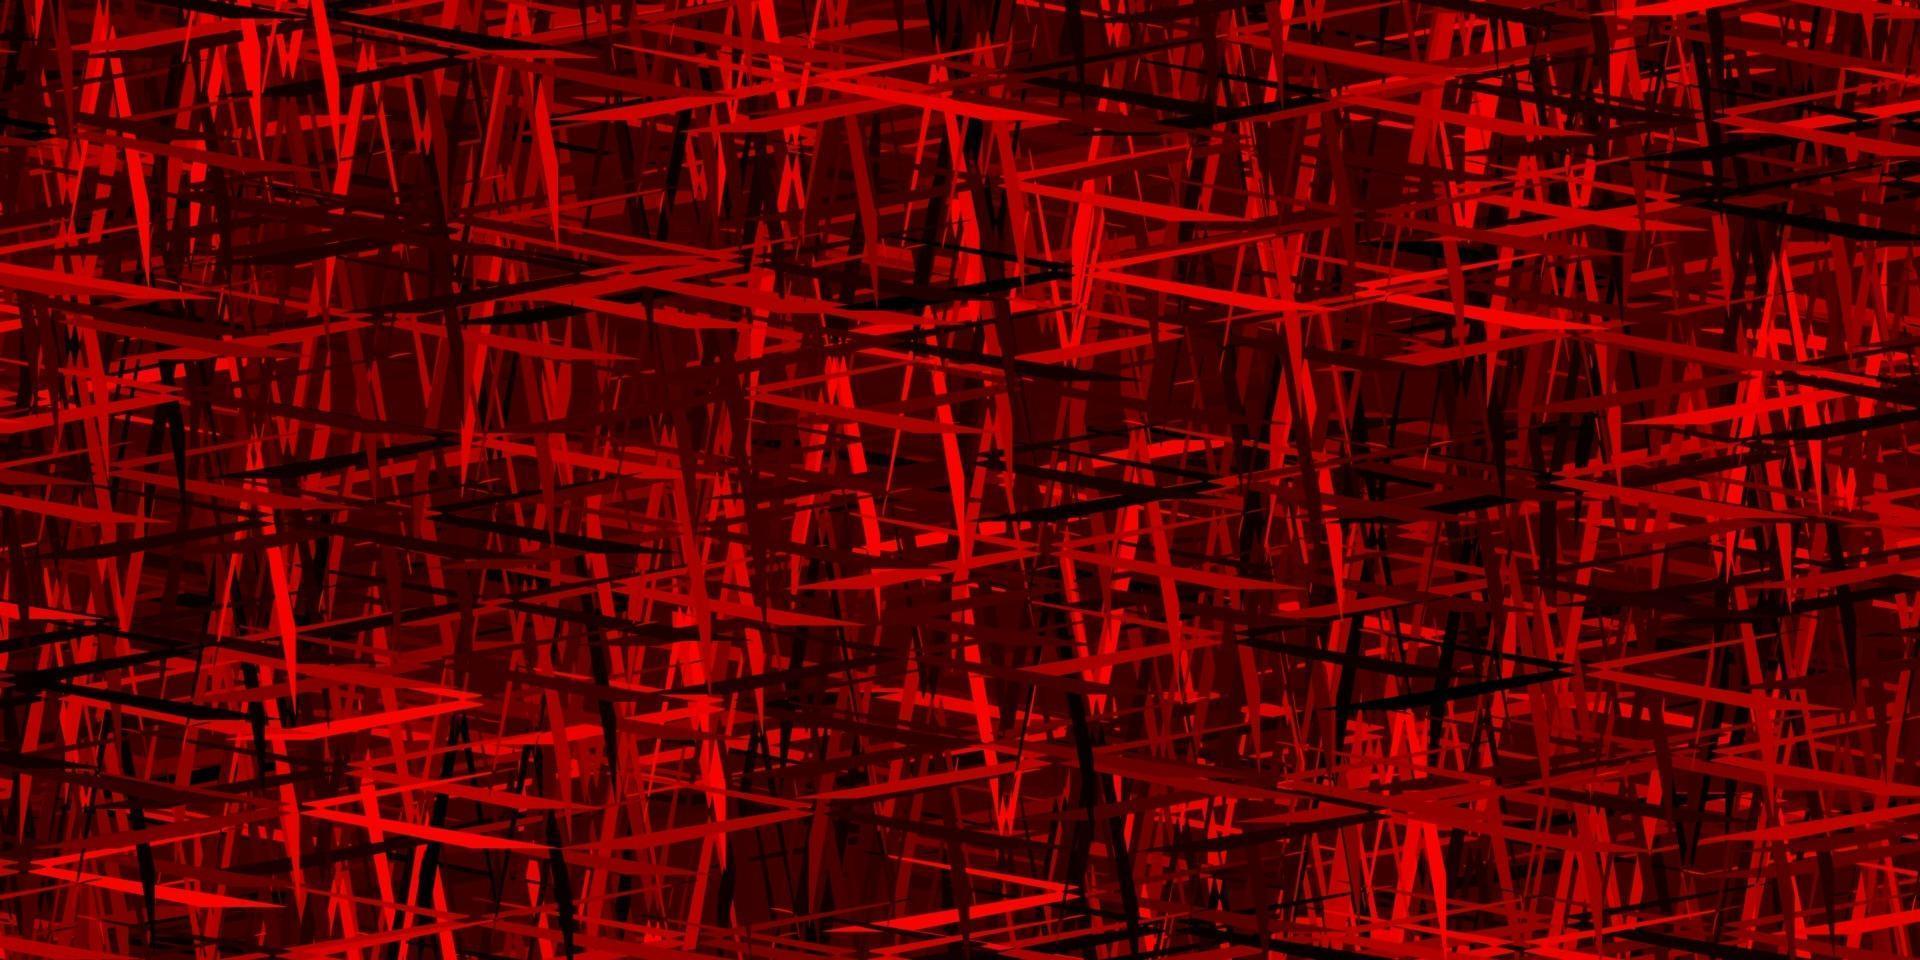 plantilla de vector rojo oscuro con palos repetidos.